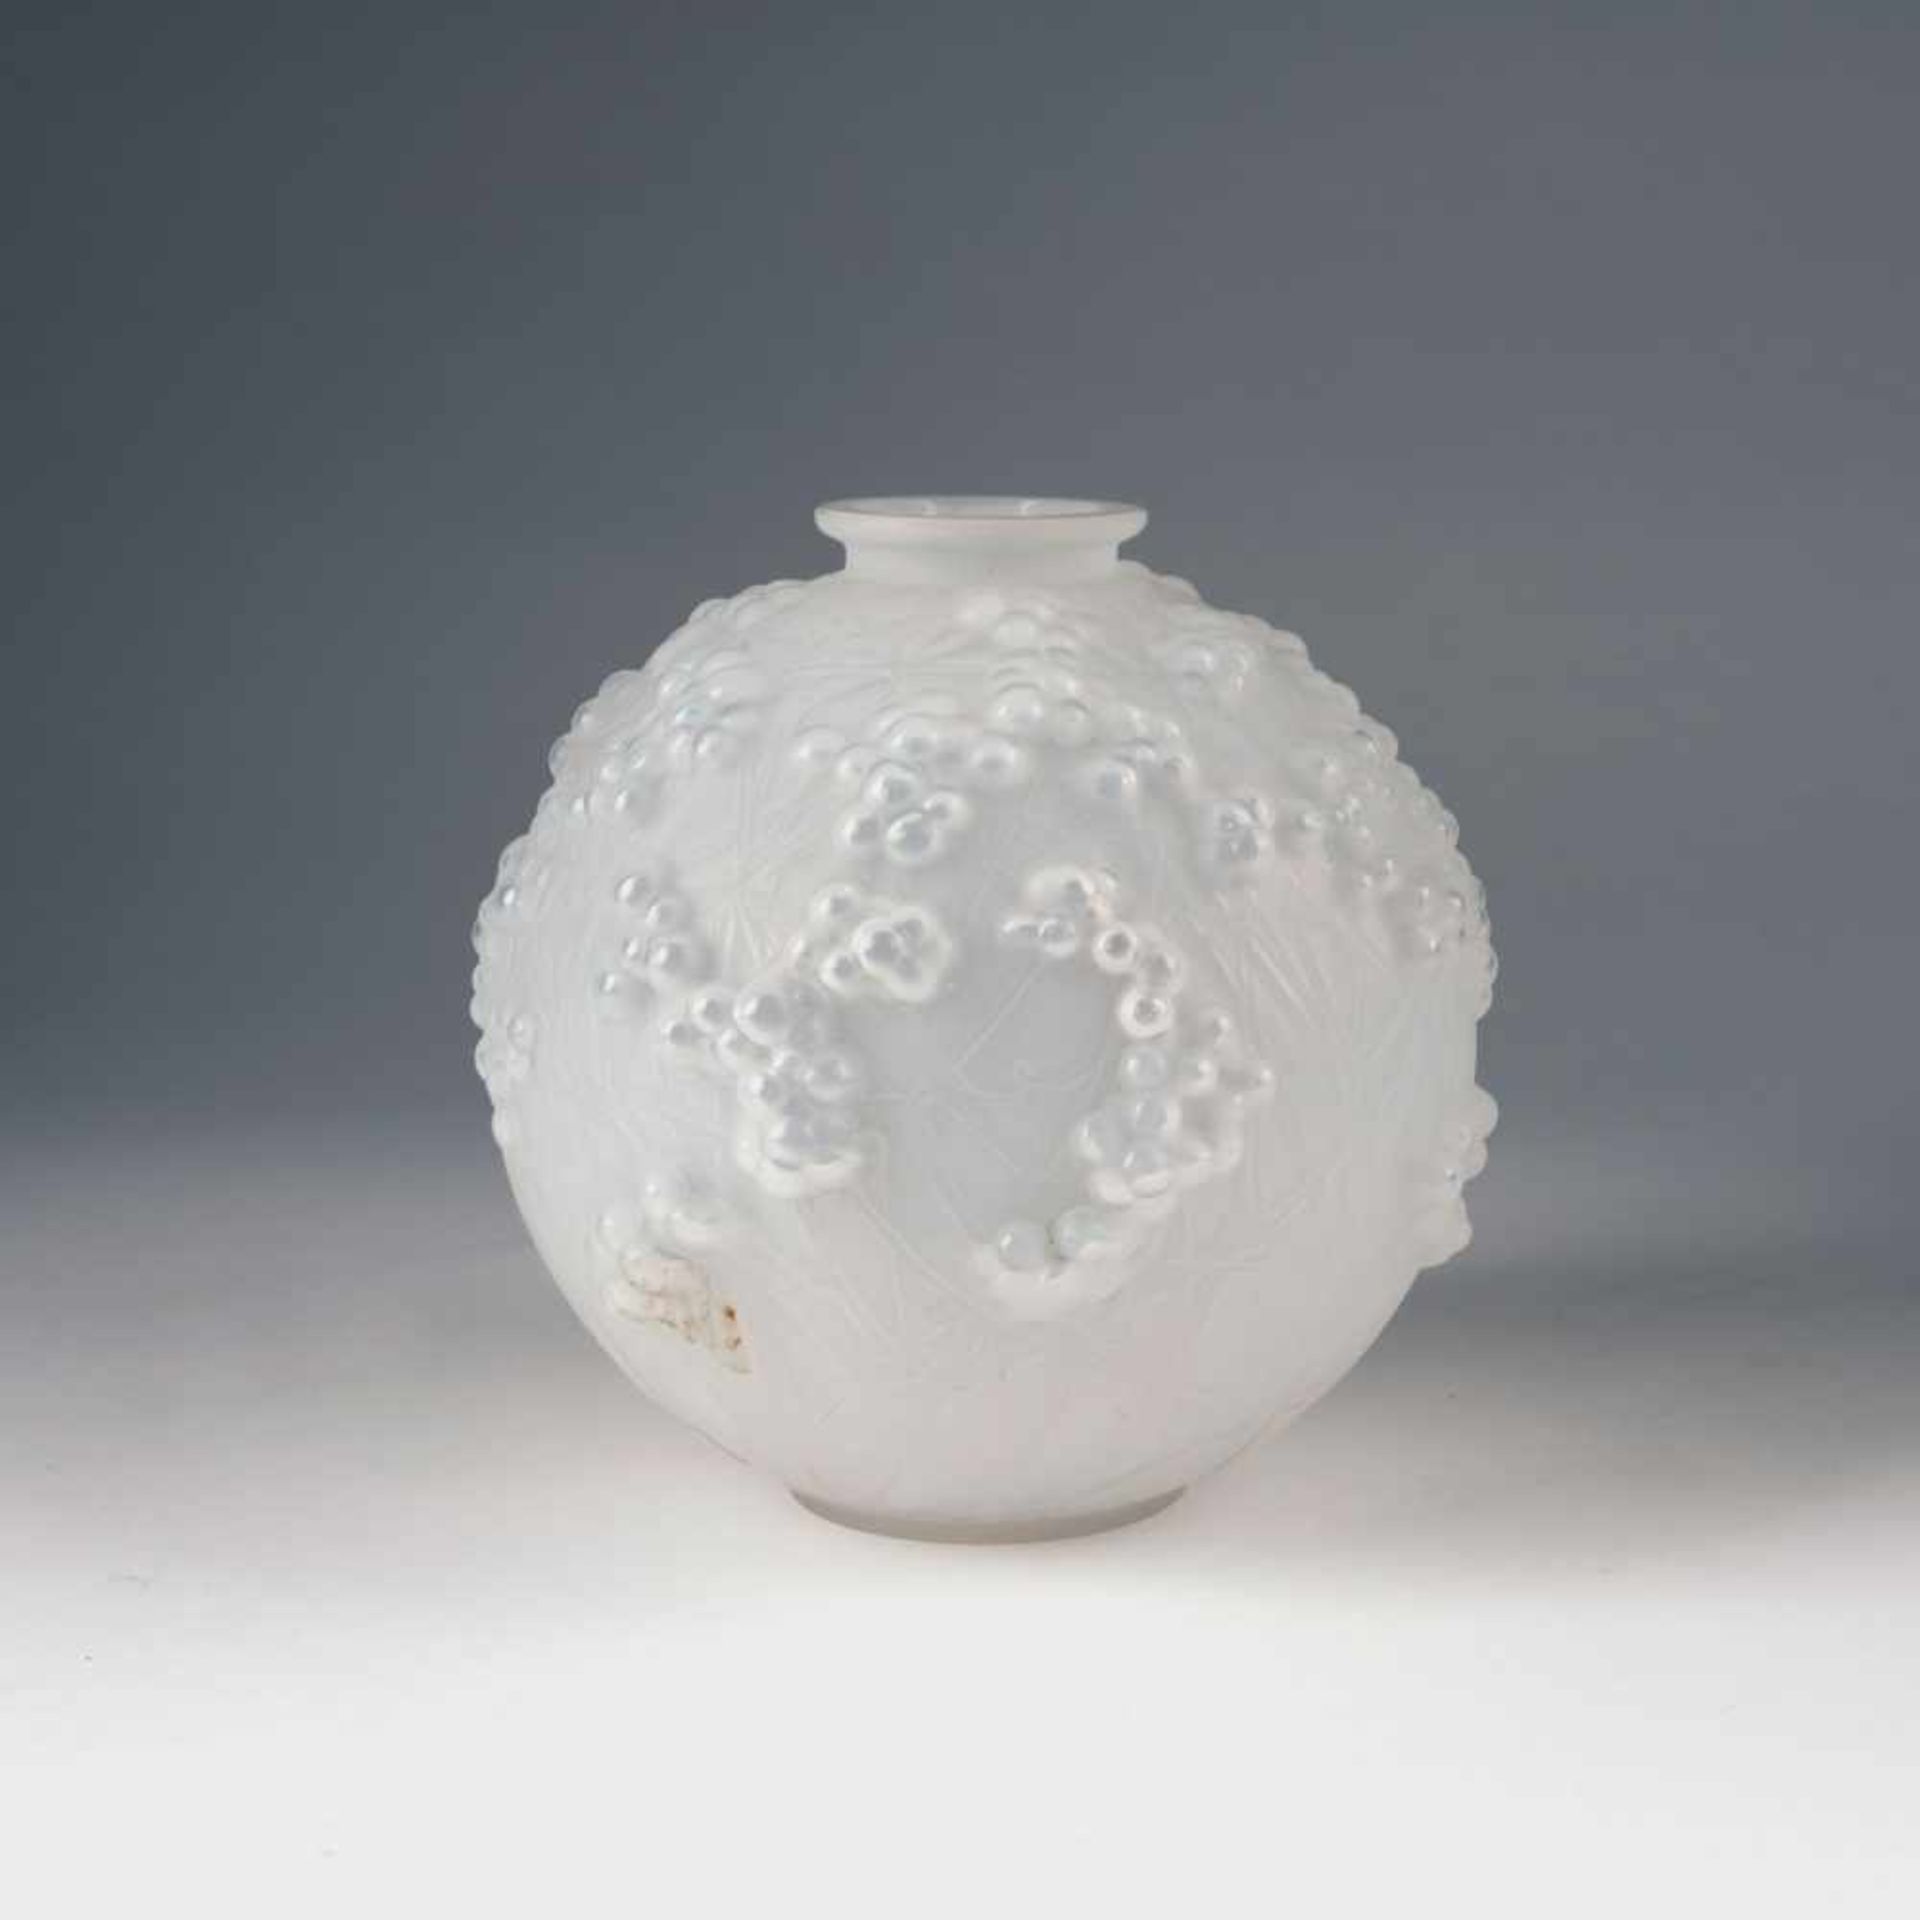 Vase 'Druide' - 'Gui de chêne', 1924 René Lalique, Wingen-sur-Moder H. 17,5 cm. Modelgeblasenes,